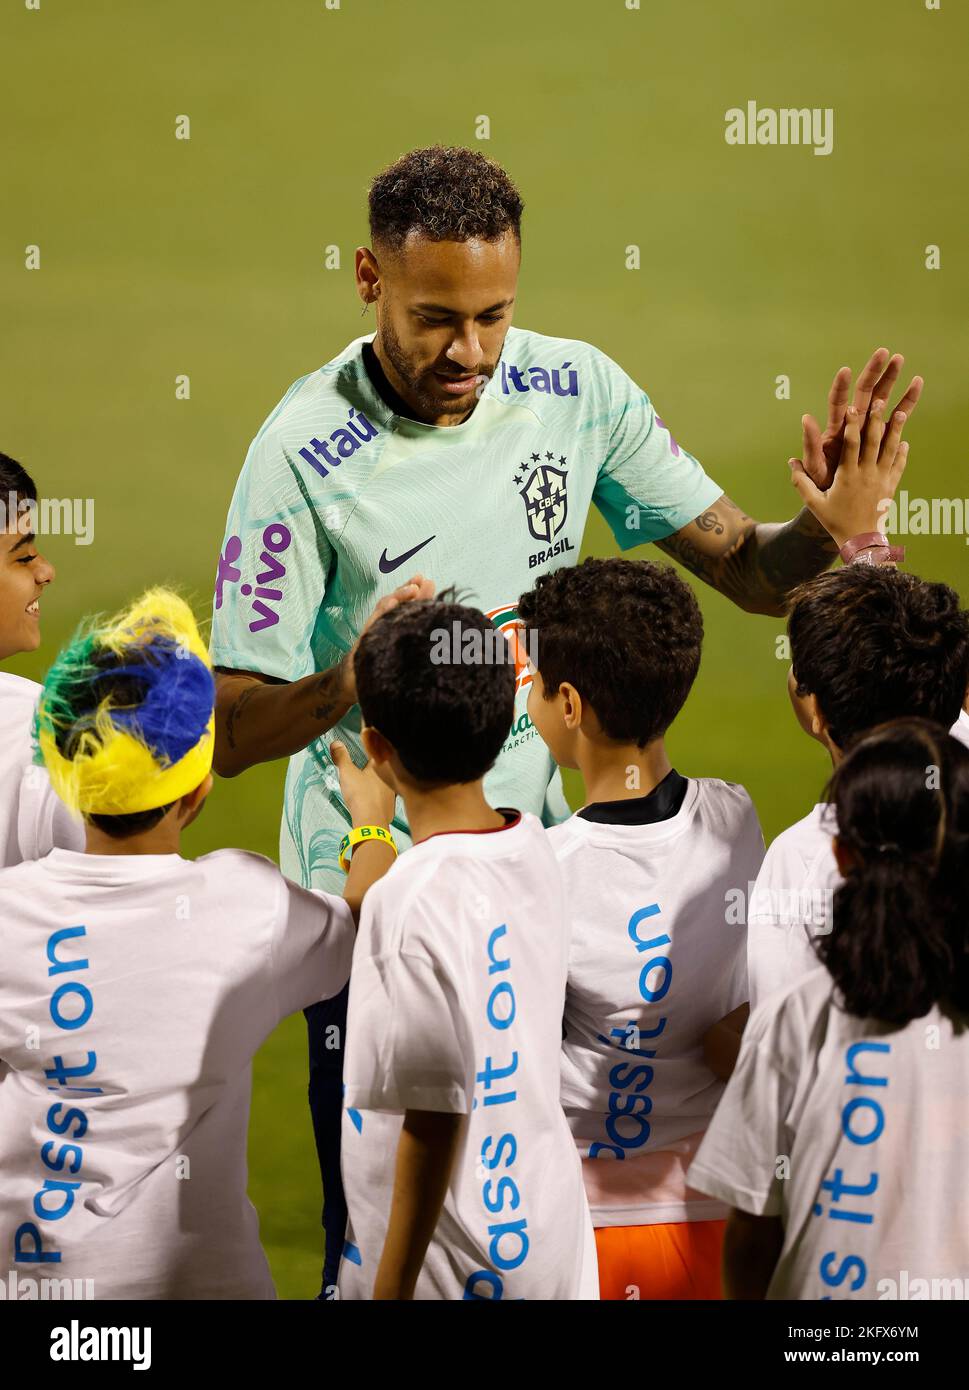 O atacante Neymar Jr com crianças durante o Treino da Seleção Brasileira para a Copa do Mundo da FIFA Catar 2022 realizado no estádio Grand Hamad Stadium em Doha, Catar. Stockfoto